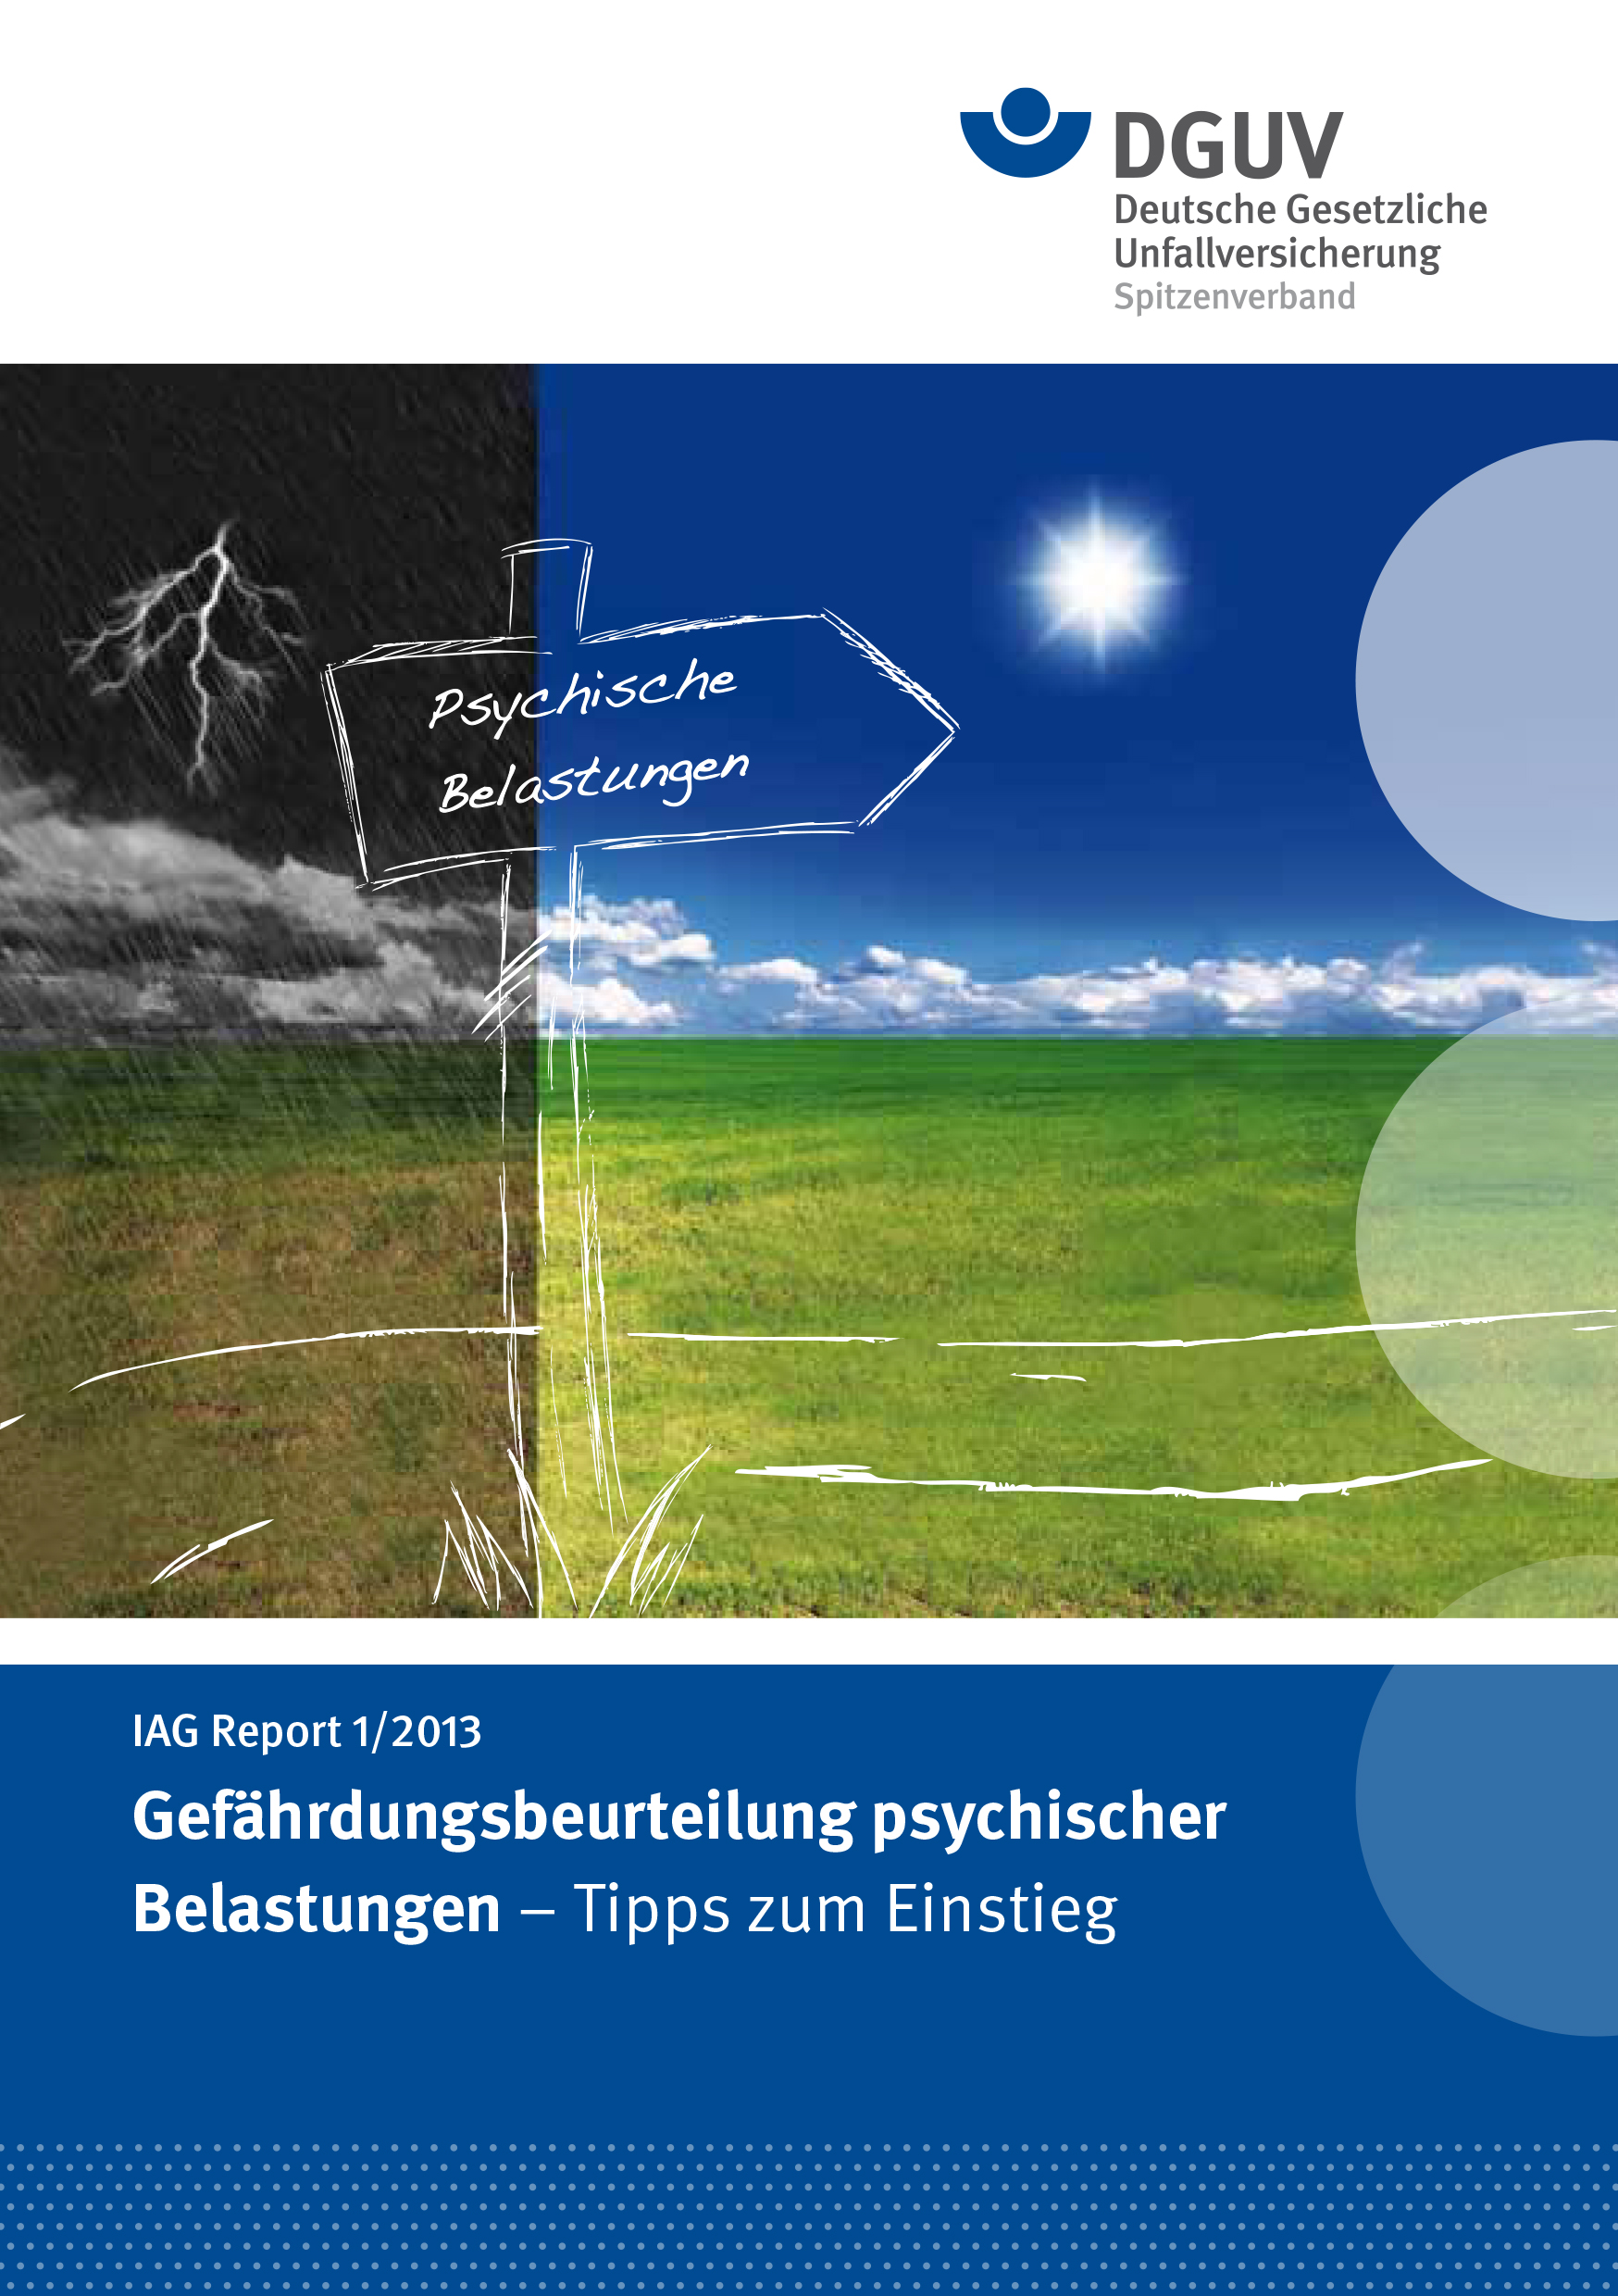 Titelbild IAG Report 1-2013: Gefährdungsbeurteilung psychischer Belastungen - Tipps zum Einstieg.